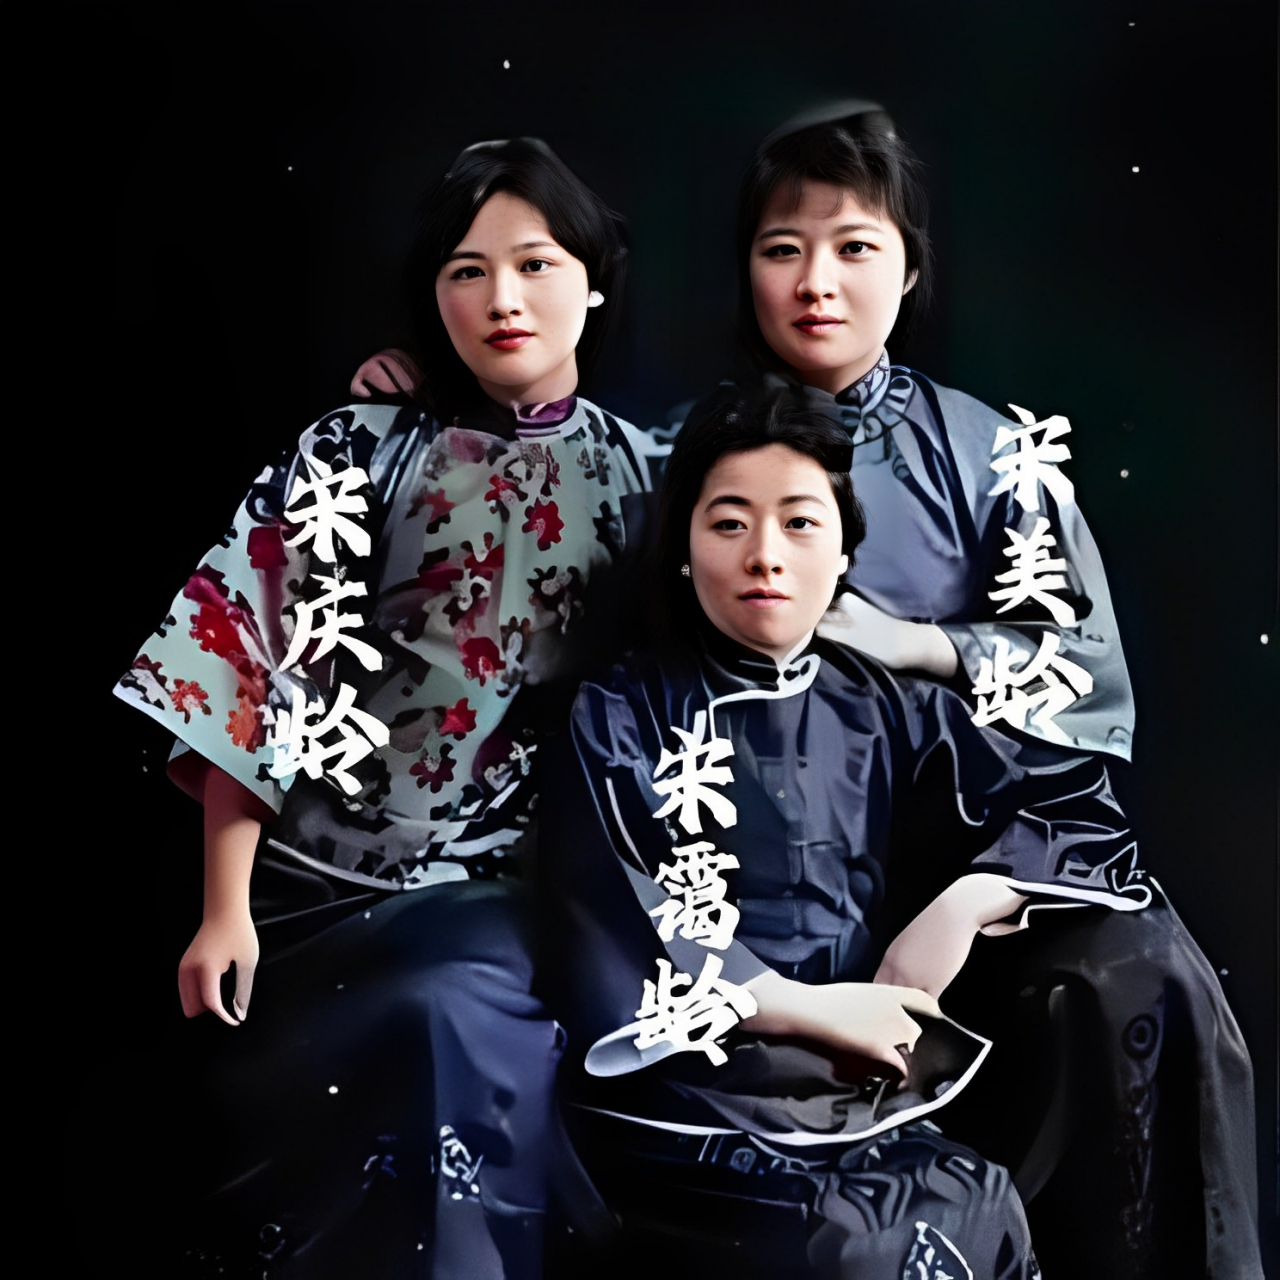 宋家三姐妹的珍贵合影,三位姐妹紧密地坐在一起,展现出深厚的感情